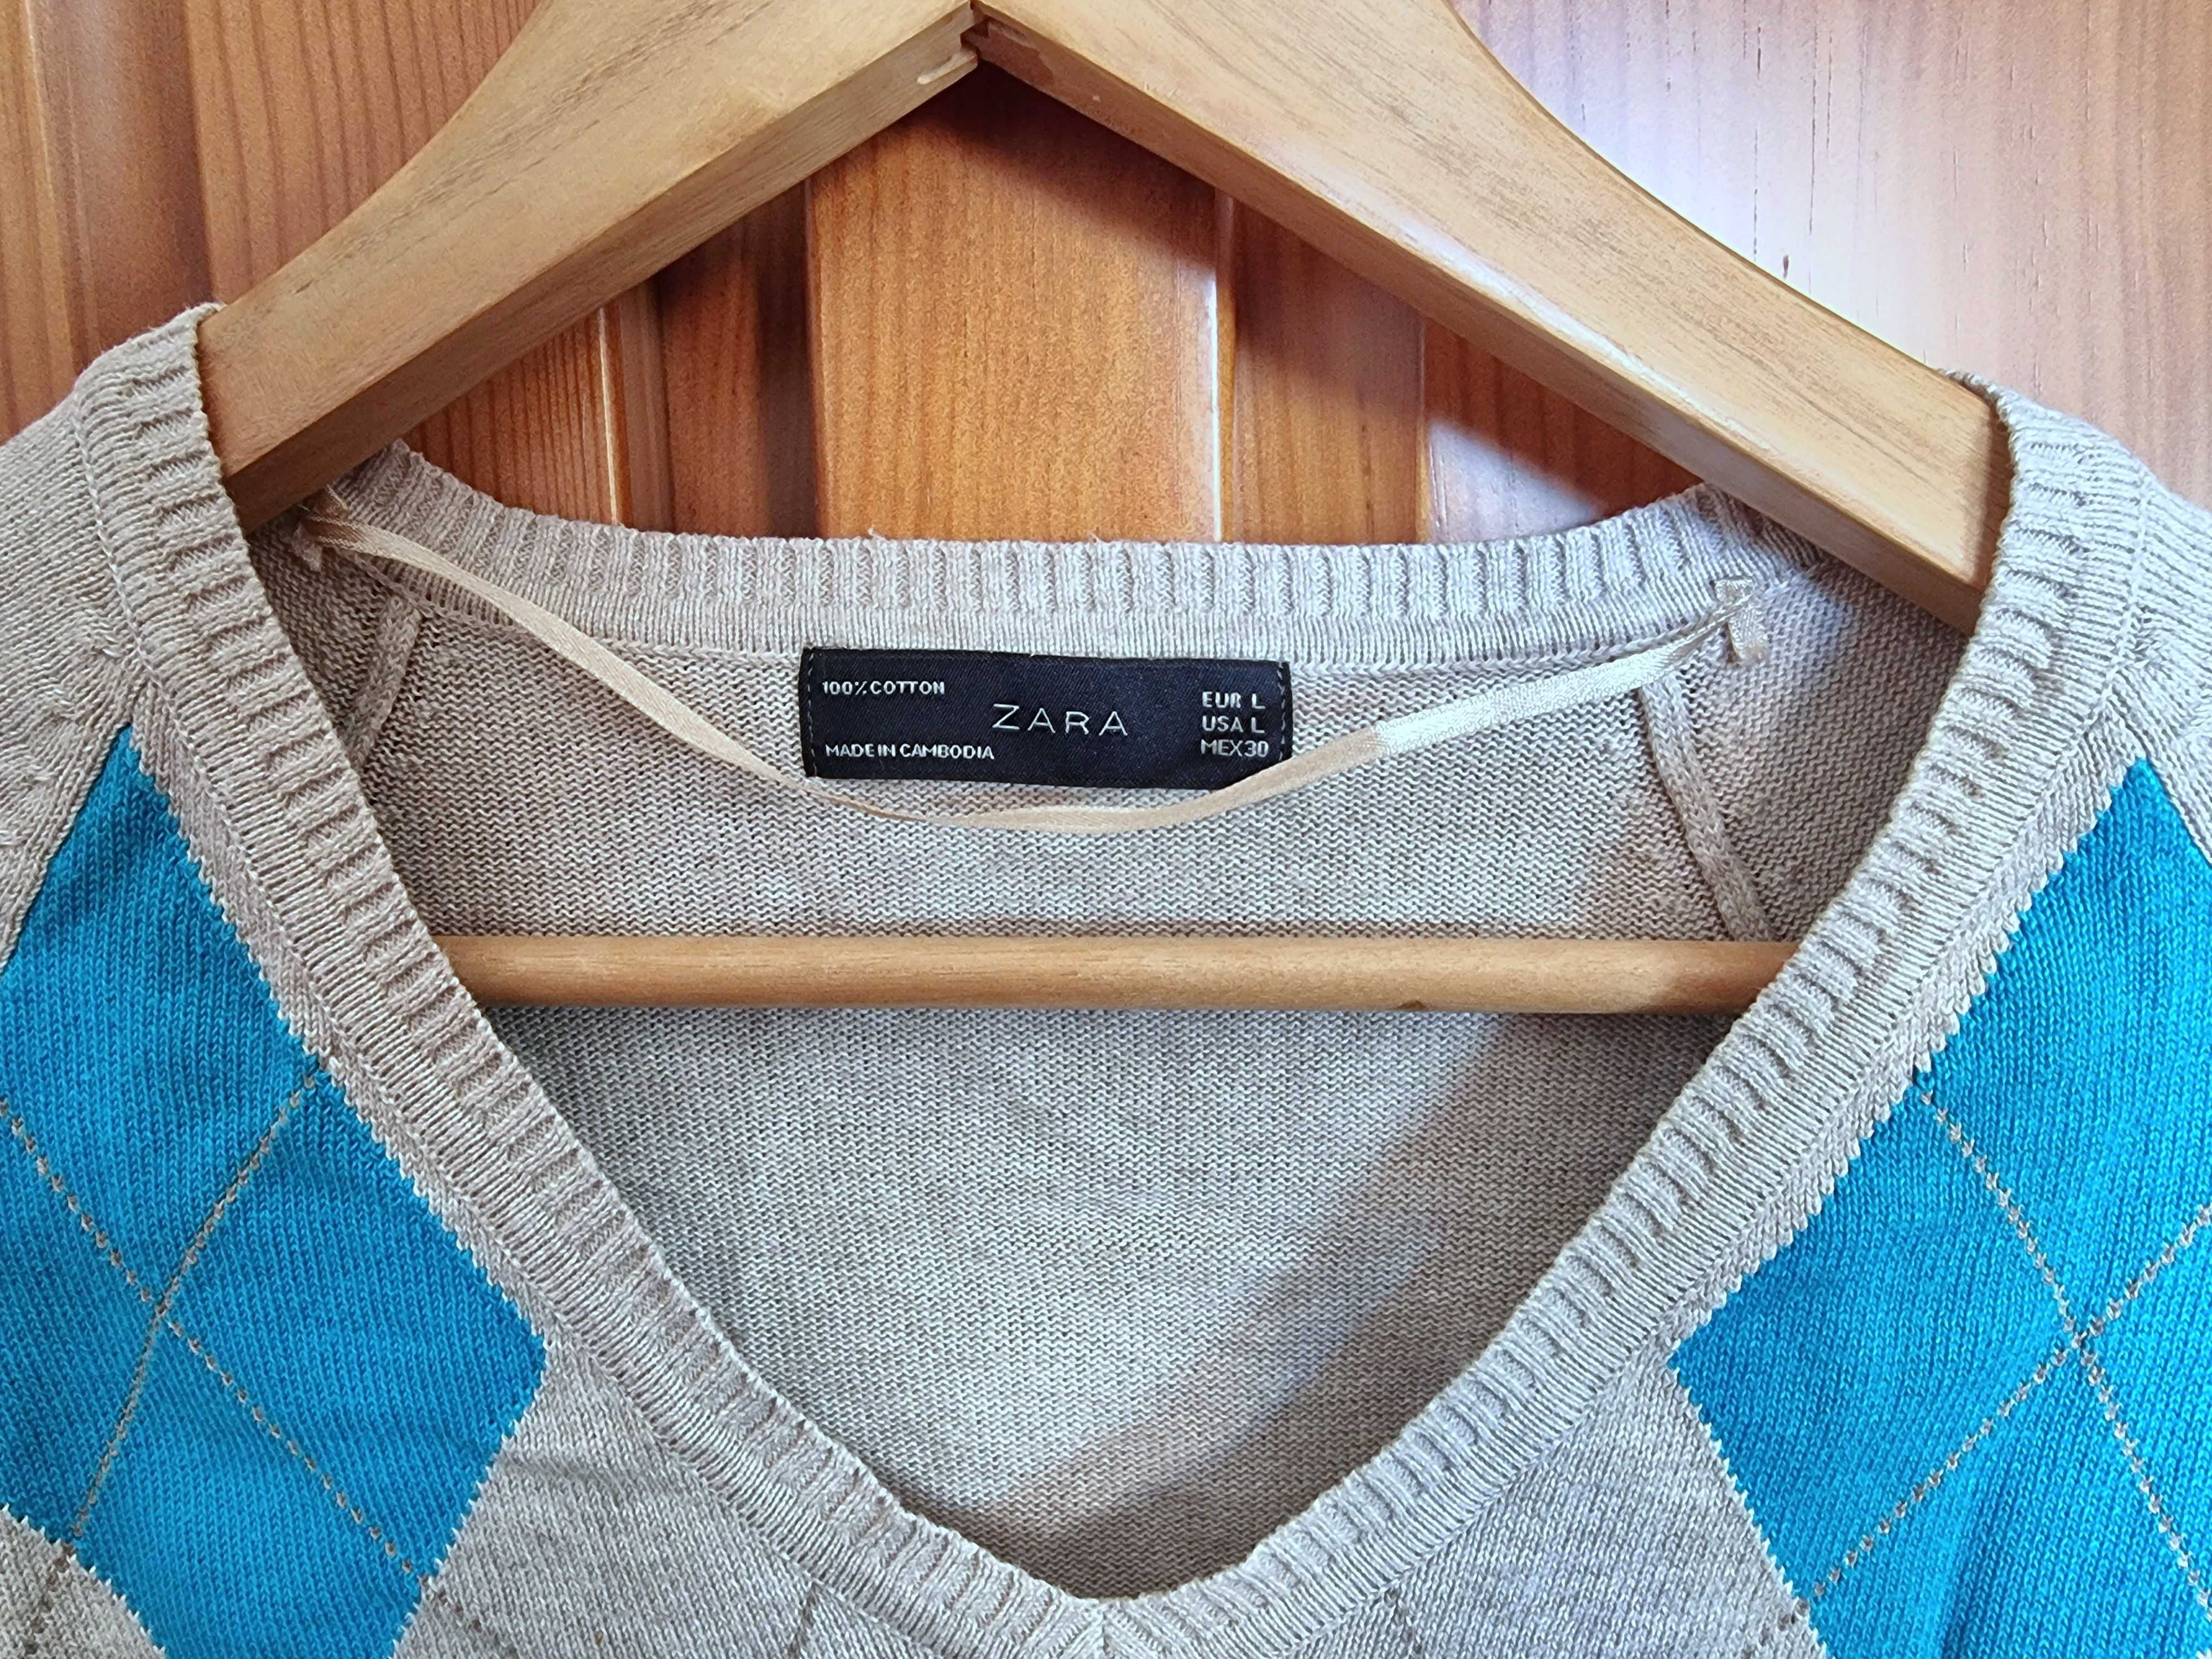 Camisola cinzenta com losangos azuis Zara 100% algodão, tamanho L